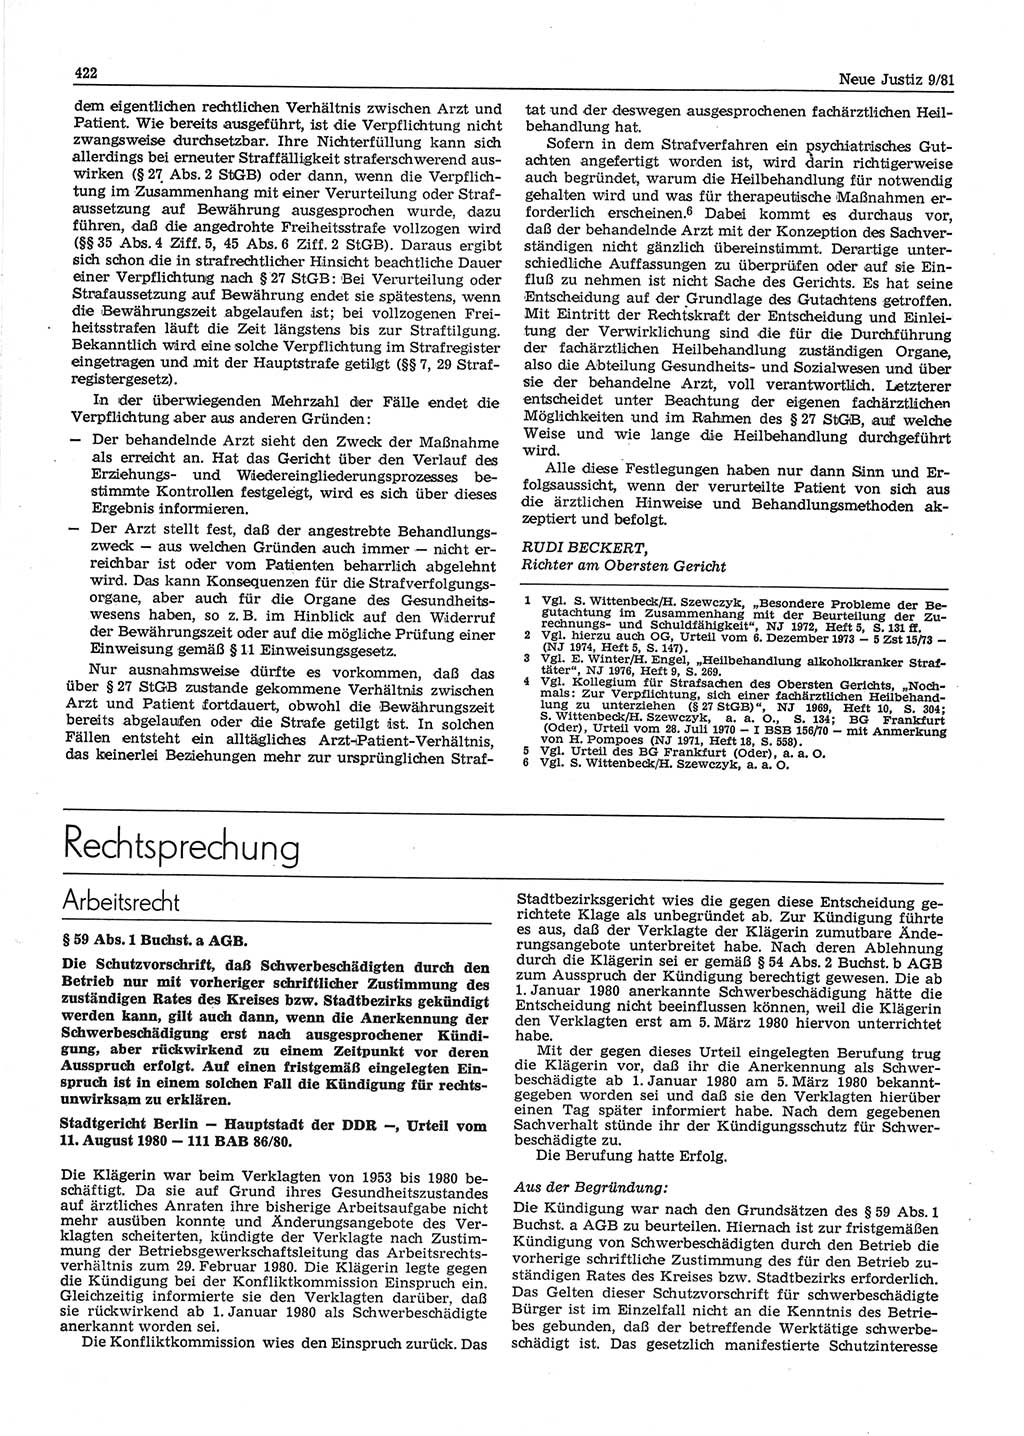 Neue Justiz (NJ), Zeitschrift für sozialistisches Recht und Gesetzlichkeit [Deutsche Demokratische Republik (DDR)], 35. Jahrgang 1981, Seite 422 (NJ DDR 1981, S. 422)